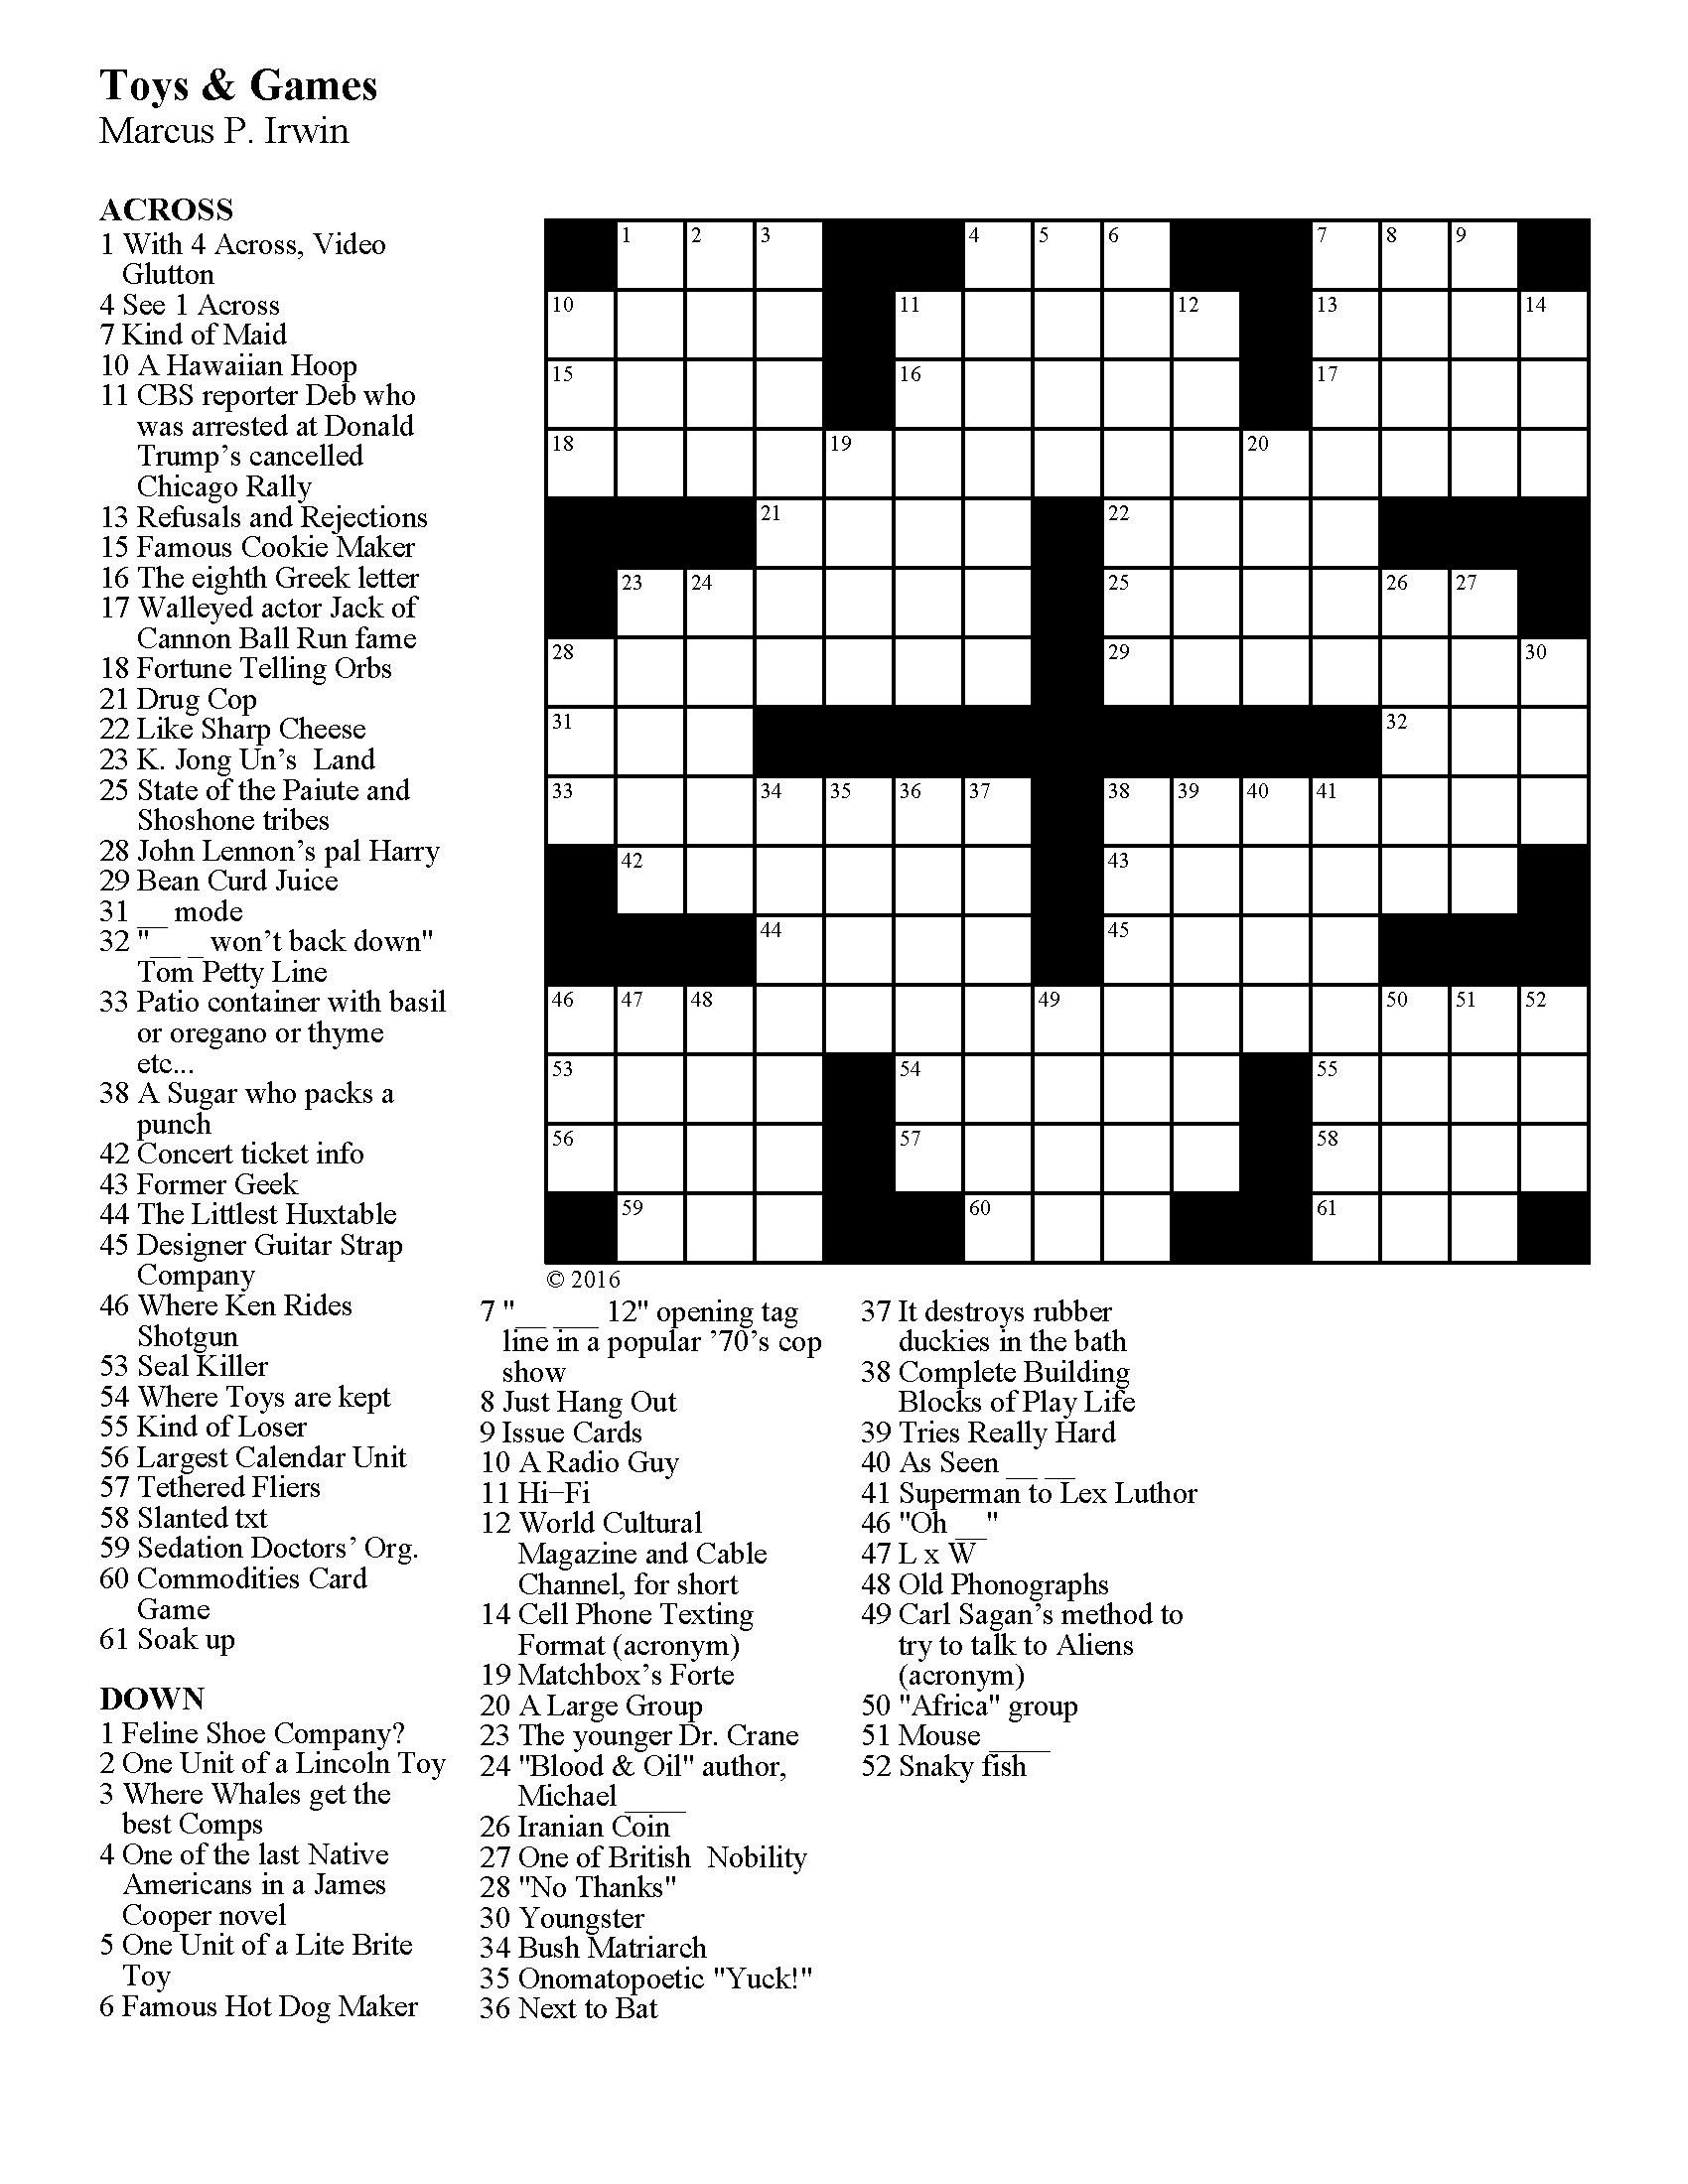 Crossword best